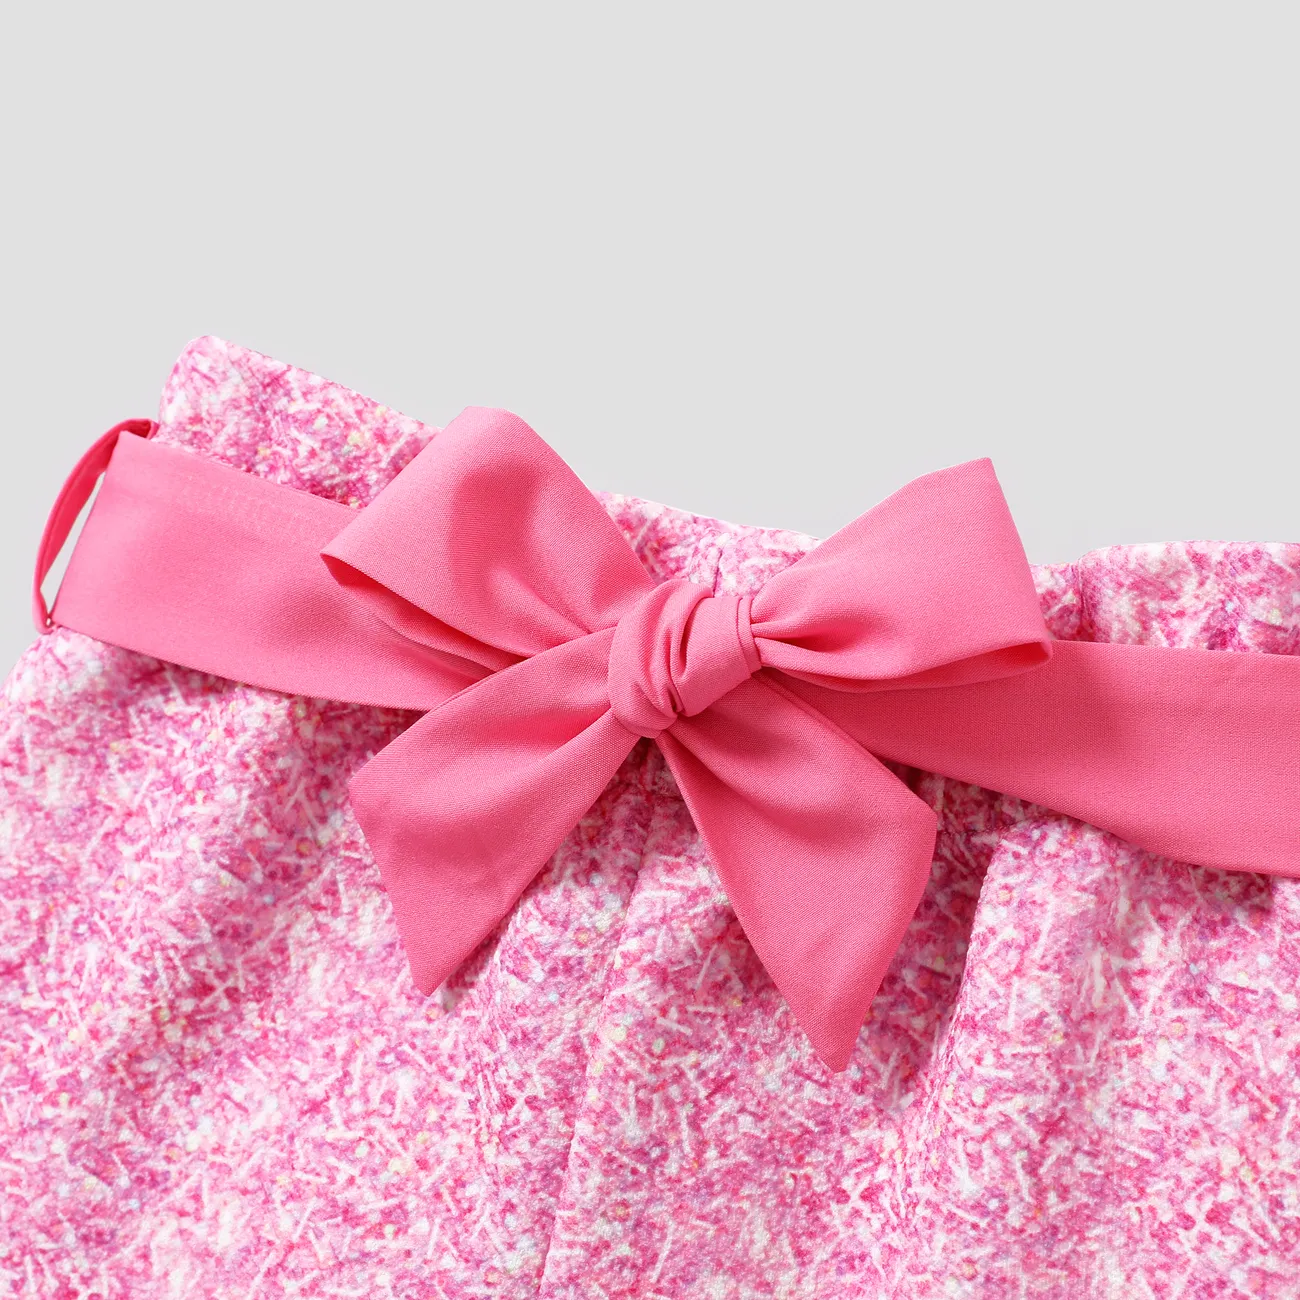 L.O.L. SURPRISE! 2pcs Toddler Girls Character Printed Slanted Ruffled Shoulder T-Shirt and Bowknot Shorts Set Pink big image 1